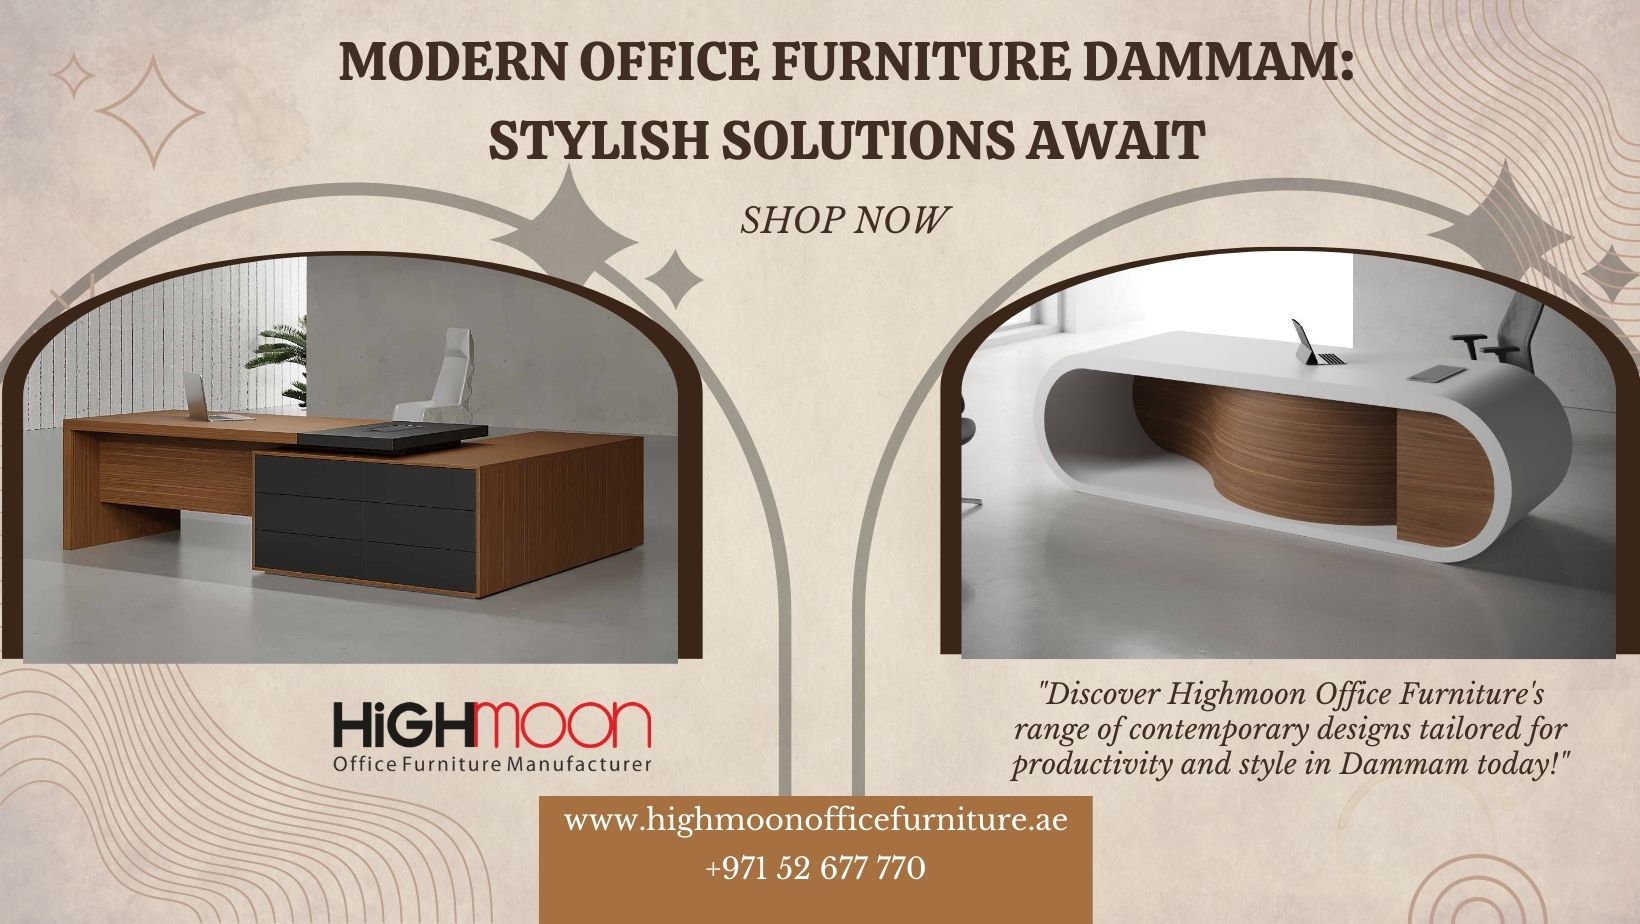 Modern Office Furniture Retailers in Dammam